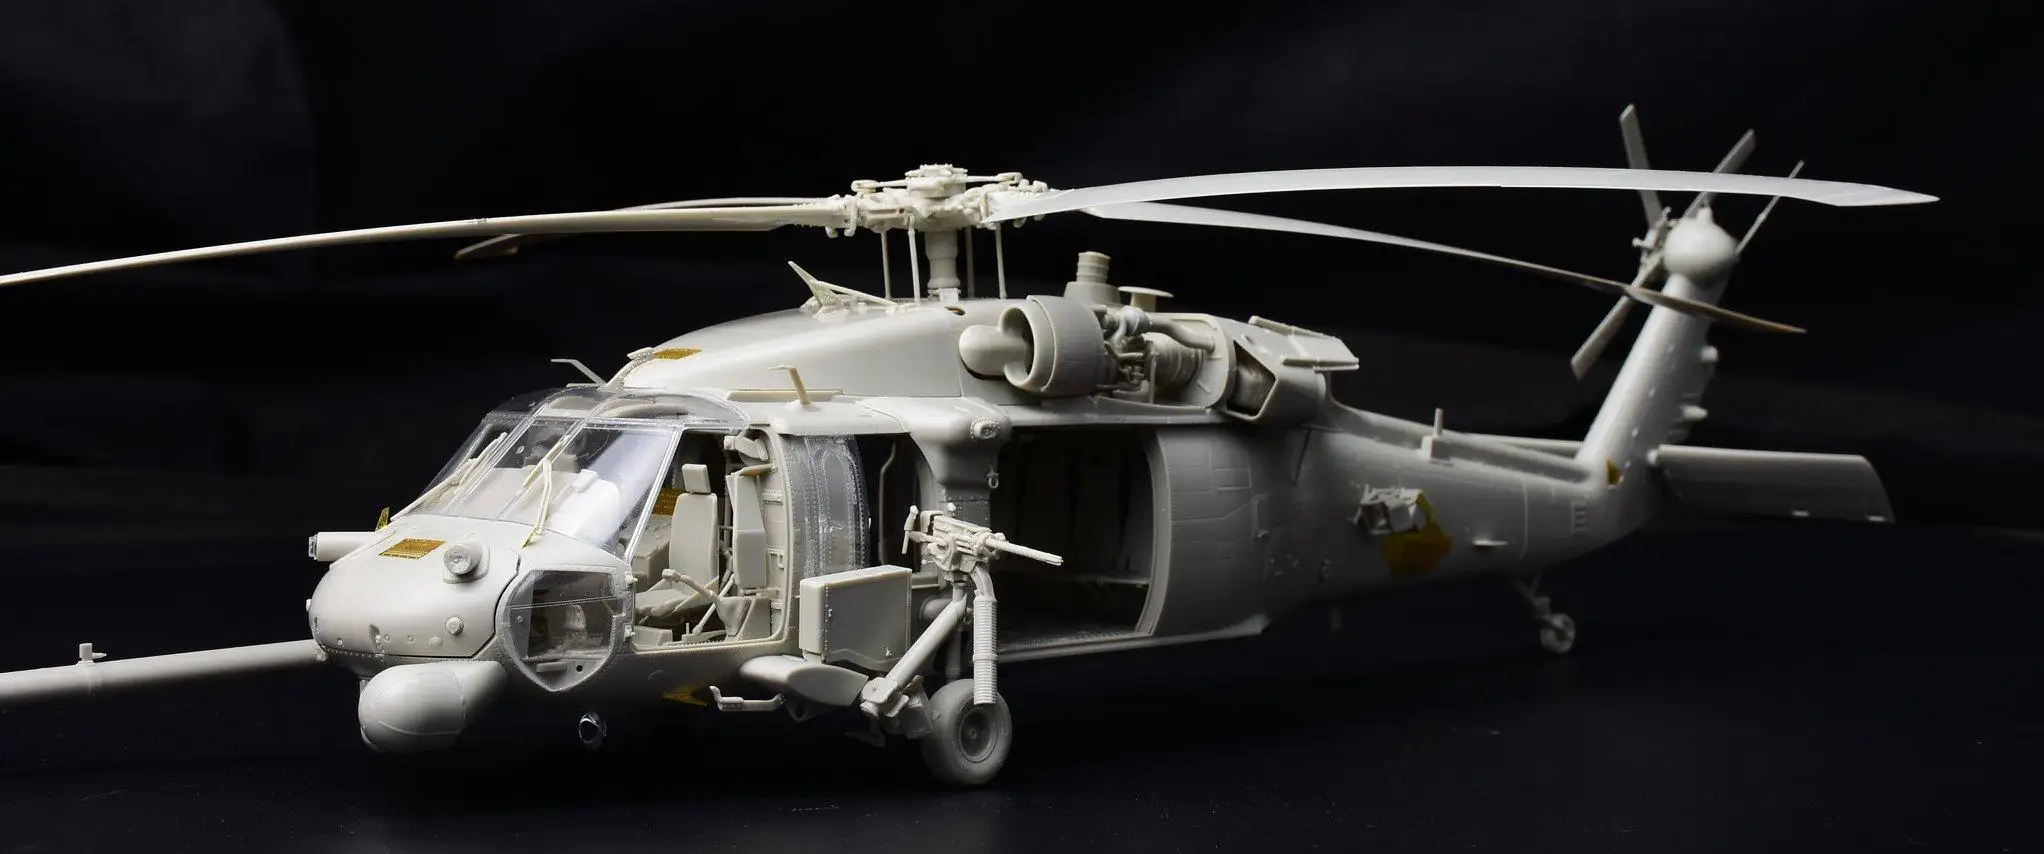 Kitty Hawk 1/35 KH50006 HH-60G "Pave hawk" Вертолет пластиковый модельный комплект